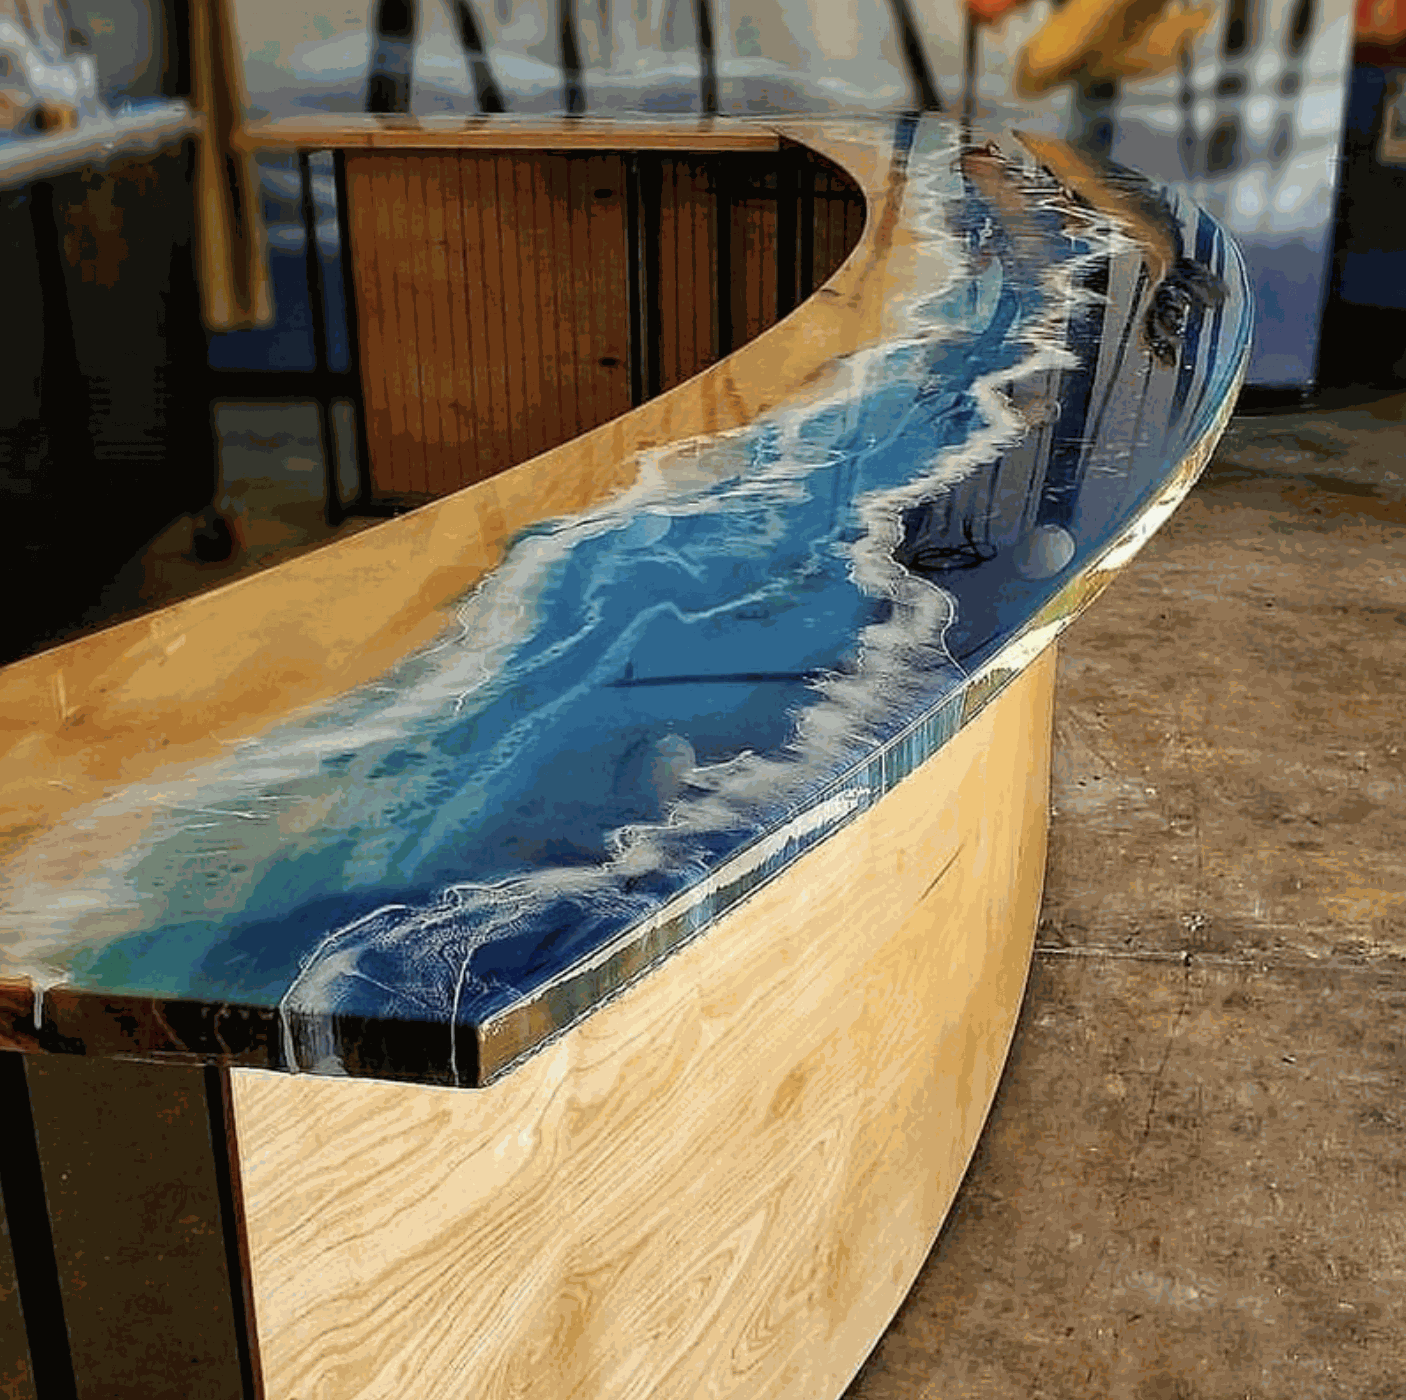 Nổi bật nhất trên mặt bàn epoxy resin này chính là bàn vẽ cá koi đang tung tăng bơi lội, tạo nên giá trị cho mẫu bàn tròn độc đáo này